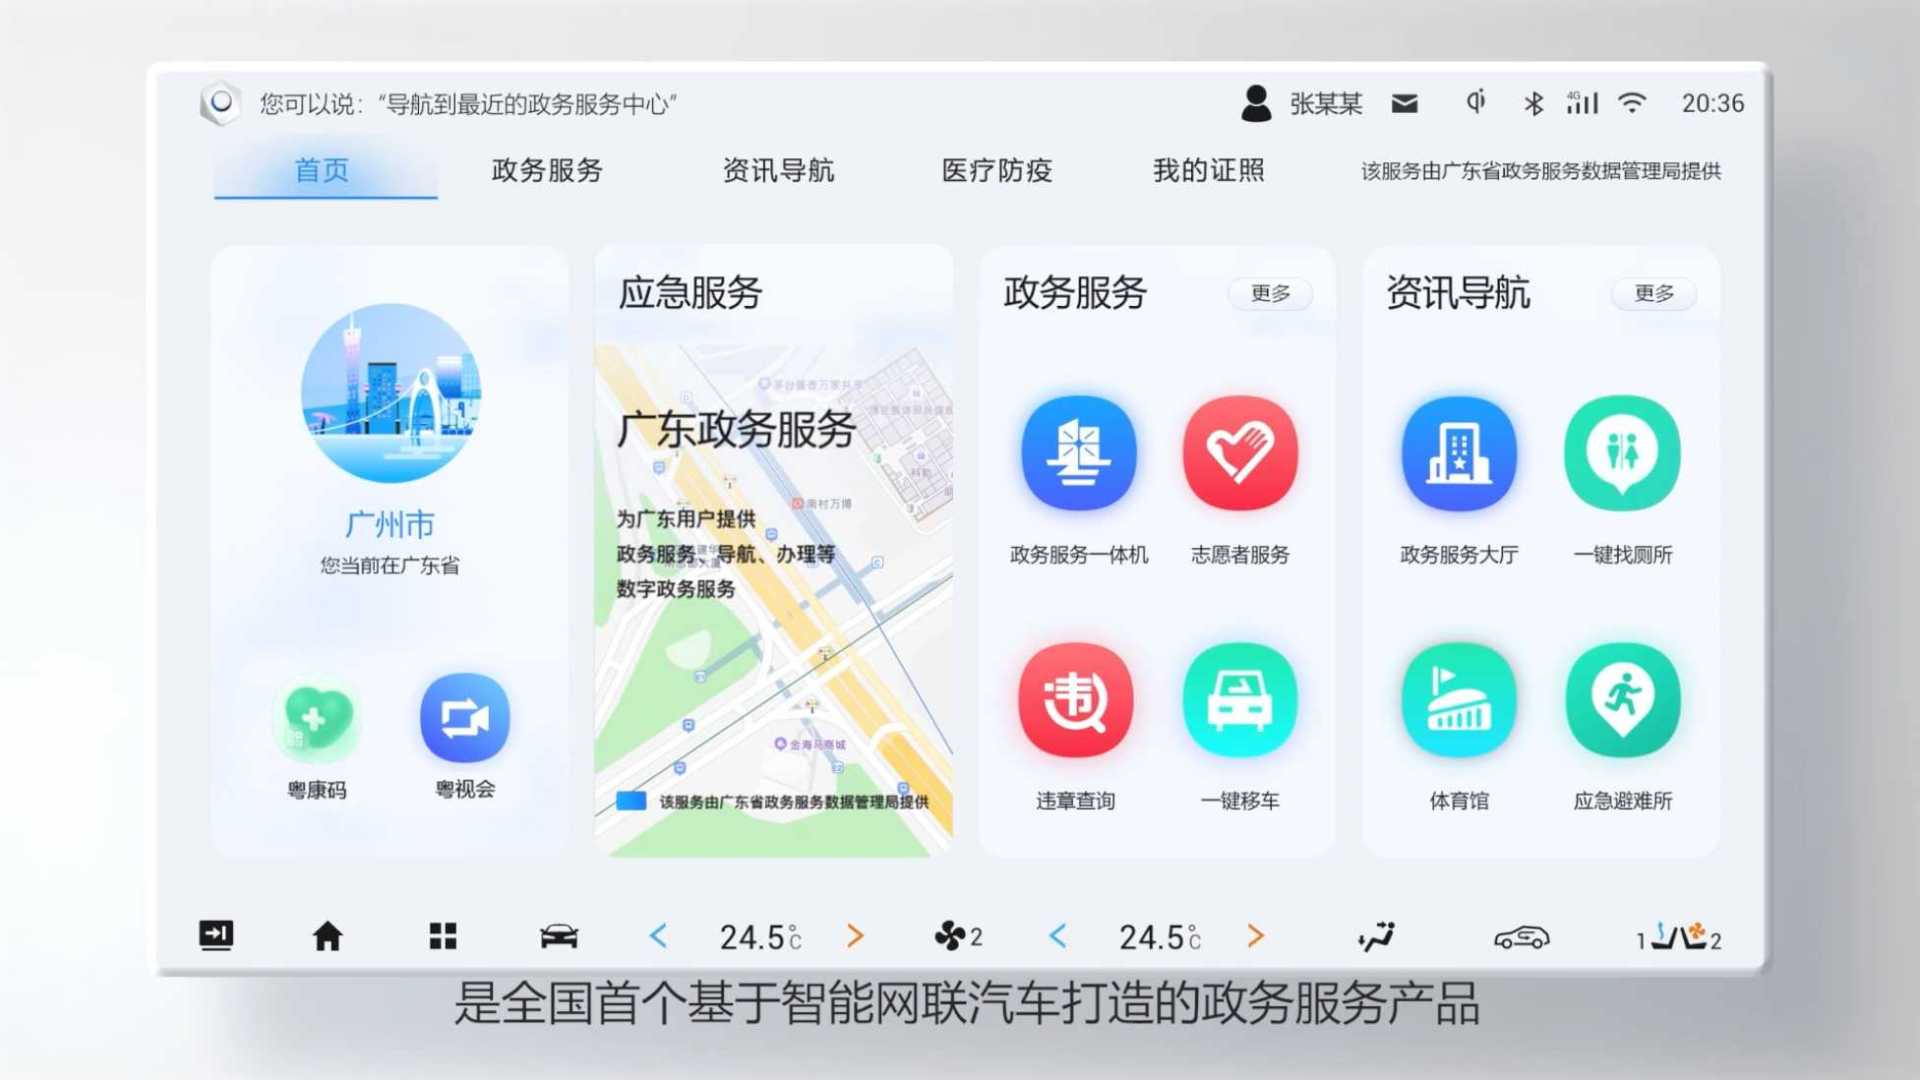 “粤优行”车载政务服务平台宣传片